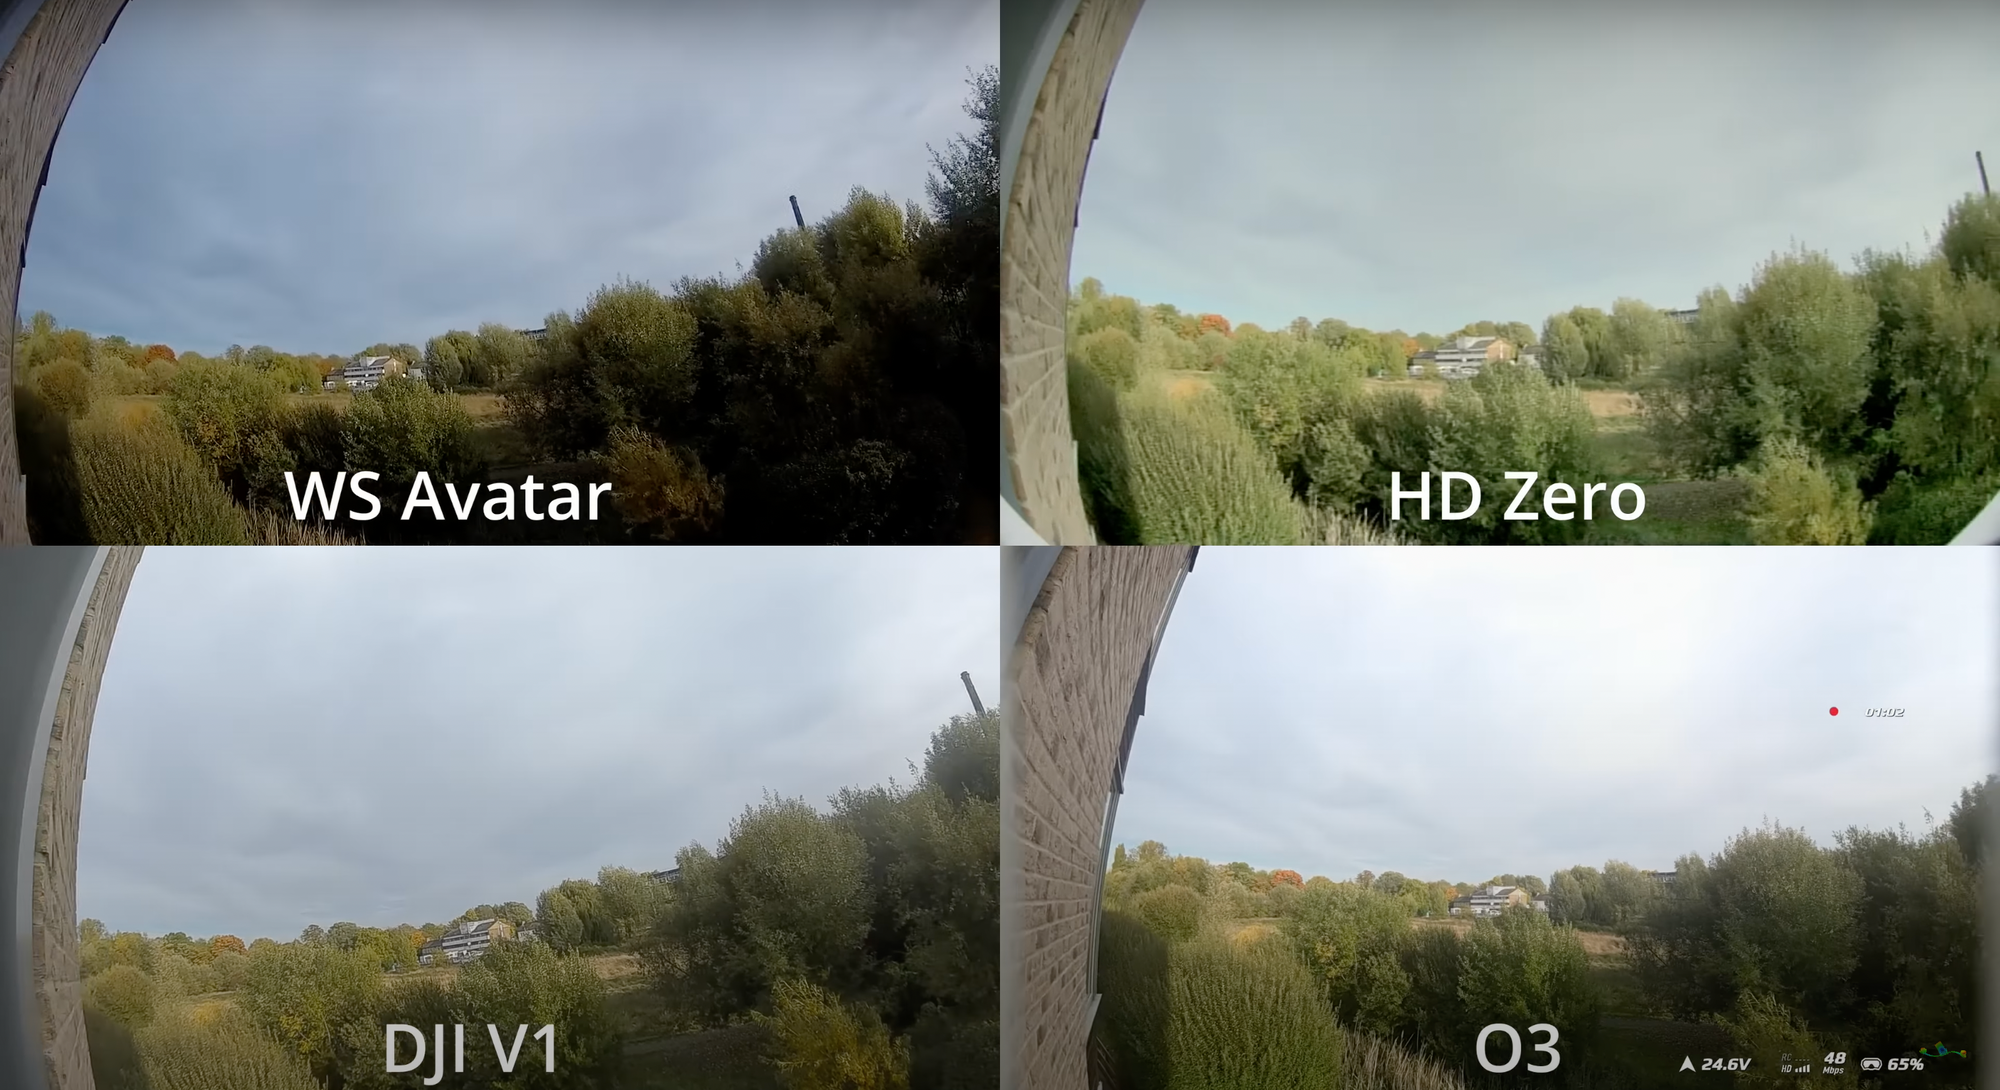 Screenshot of Avatar, vs DJI V1, VS DJI O3, vs HDZero